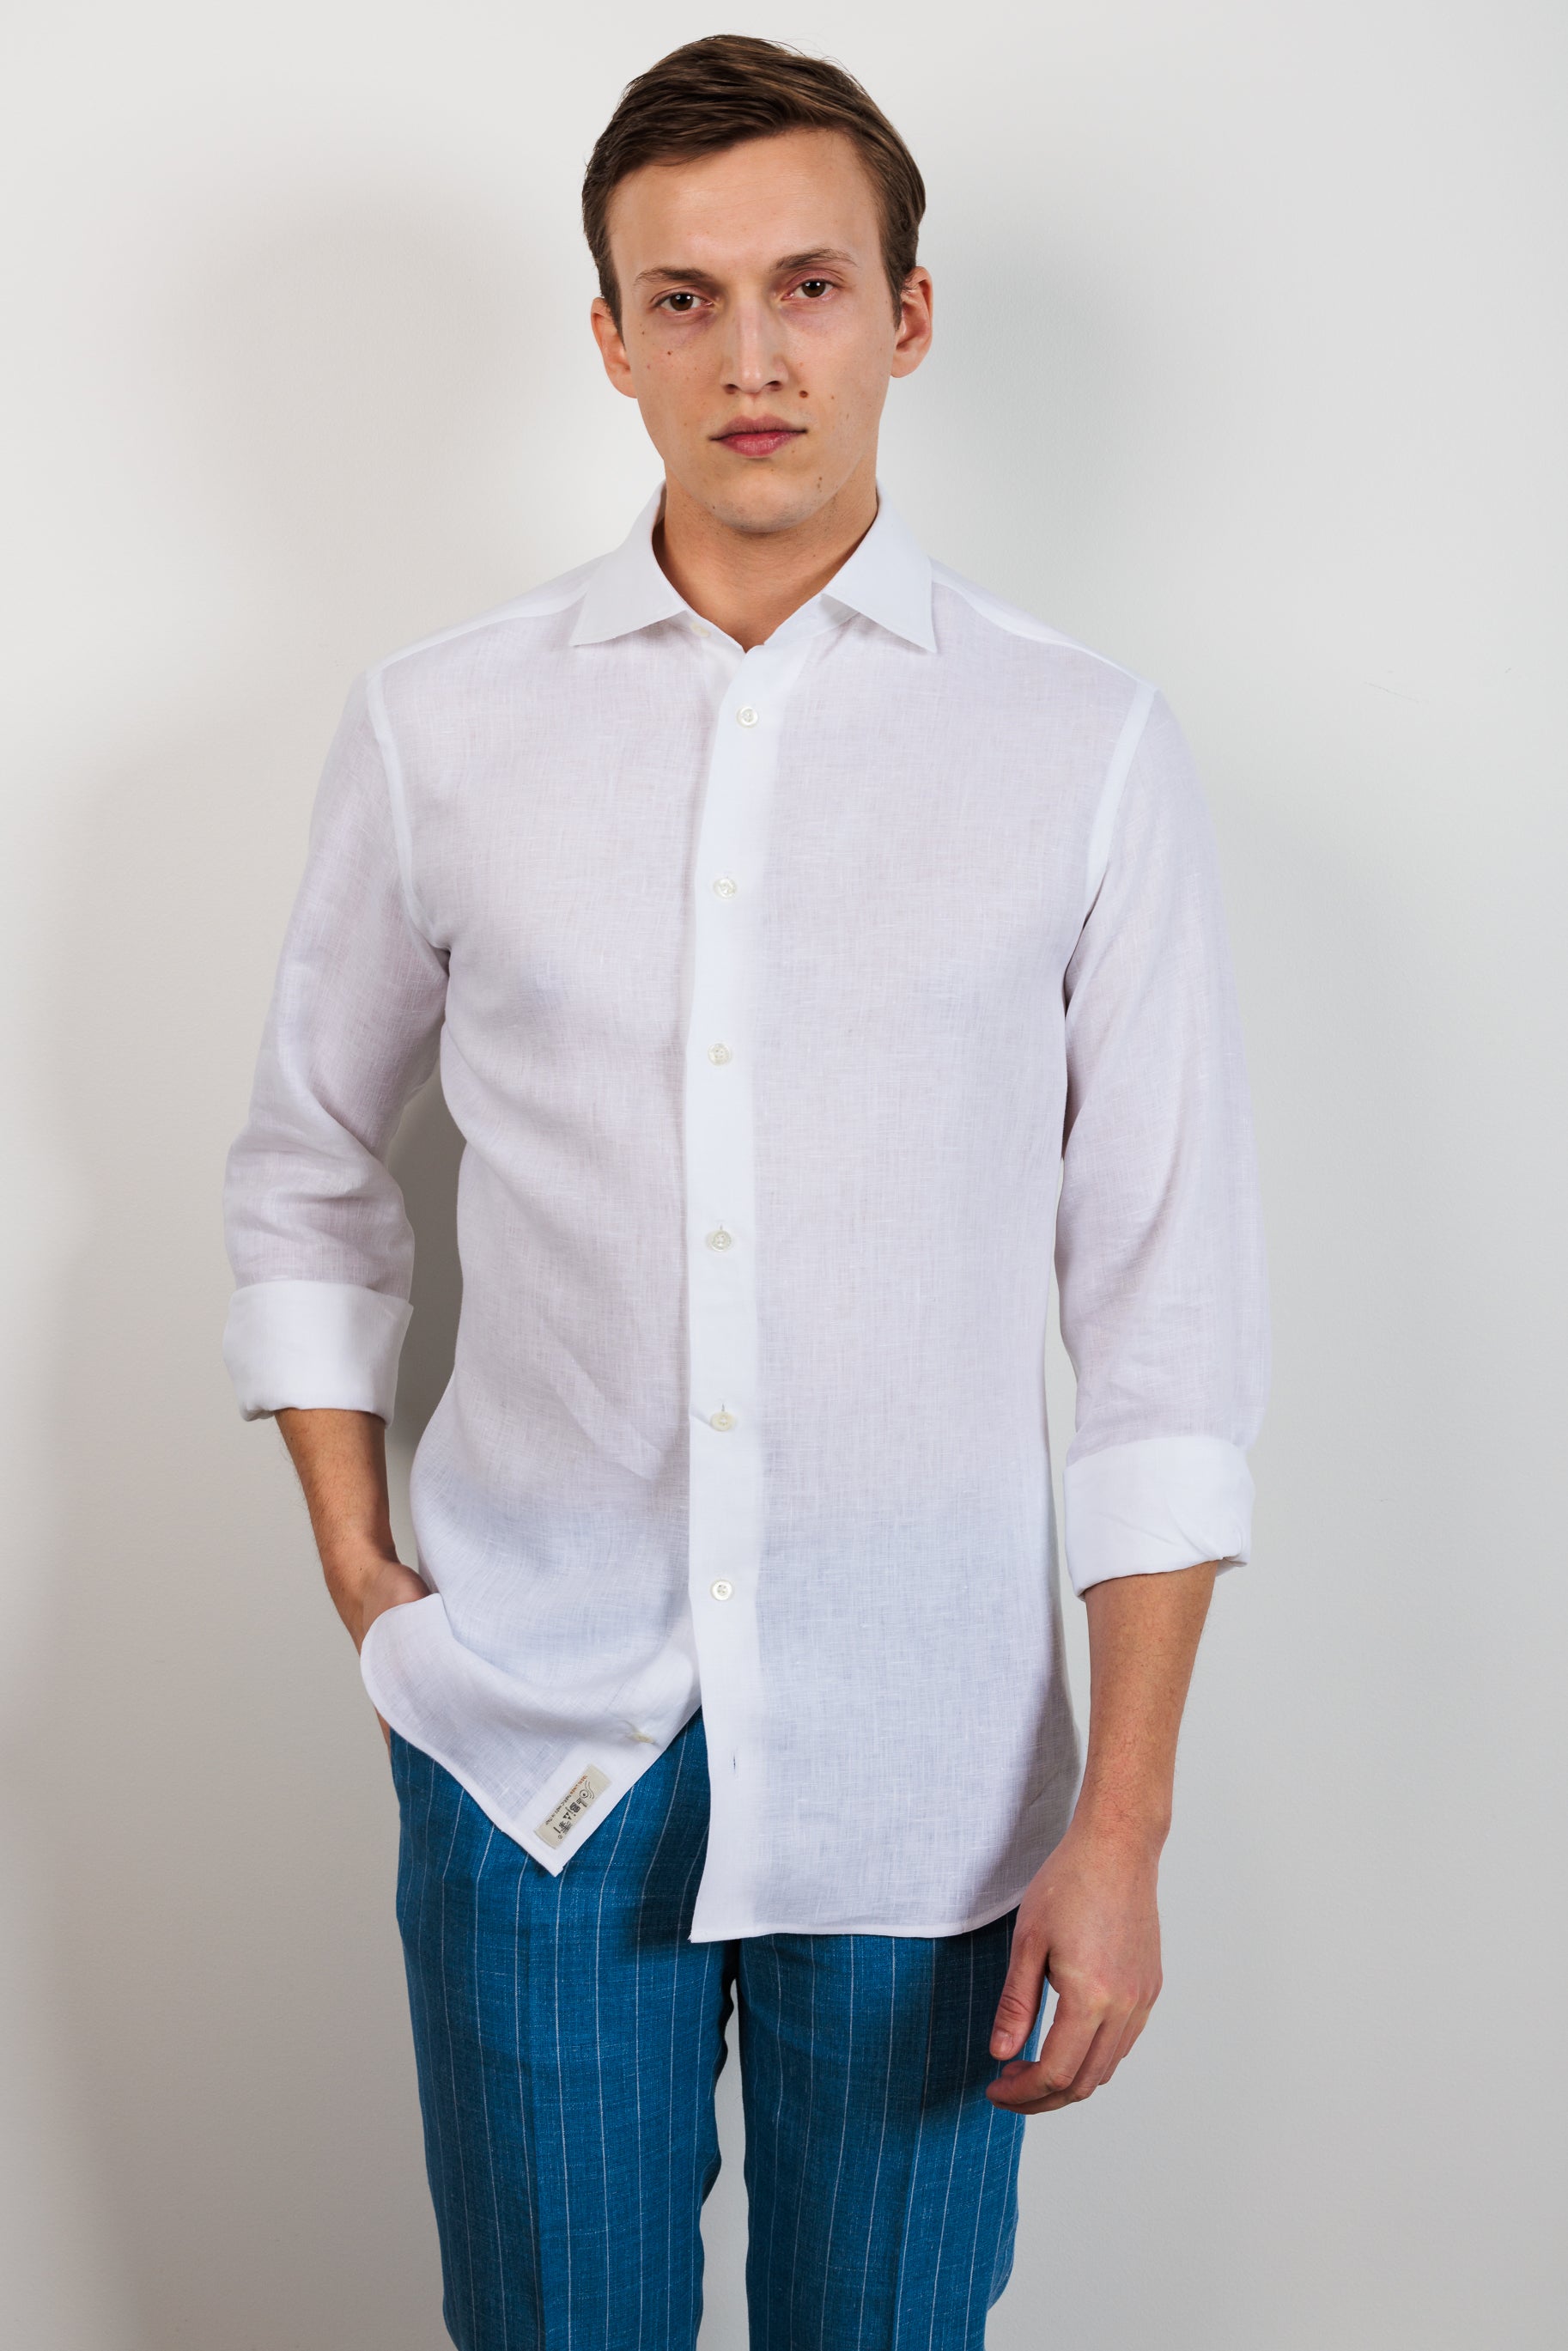 Shirt "PORTOFINO" / Fine Linen by Solbiati of Loro Piana